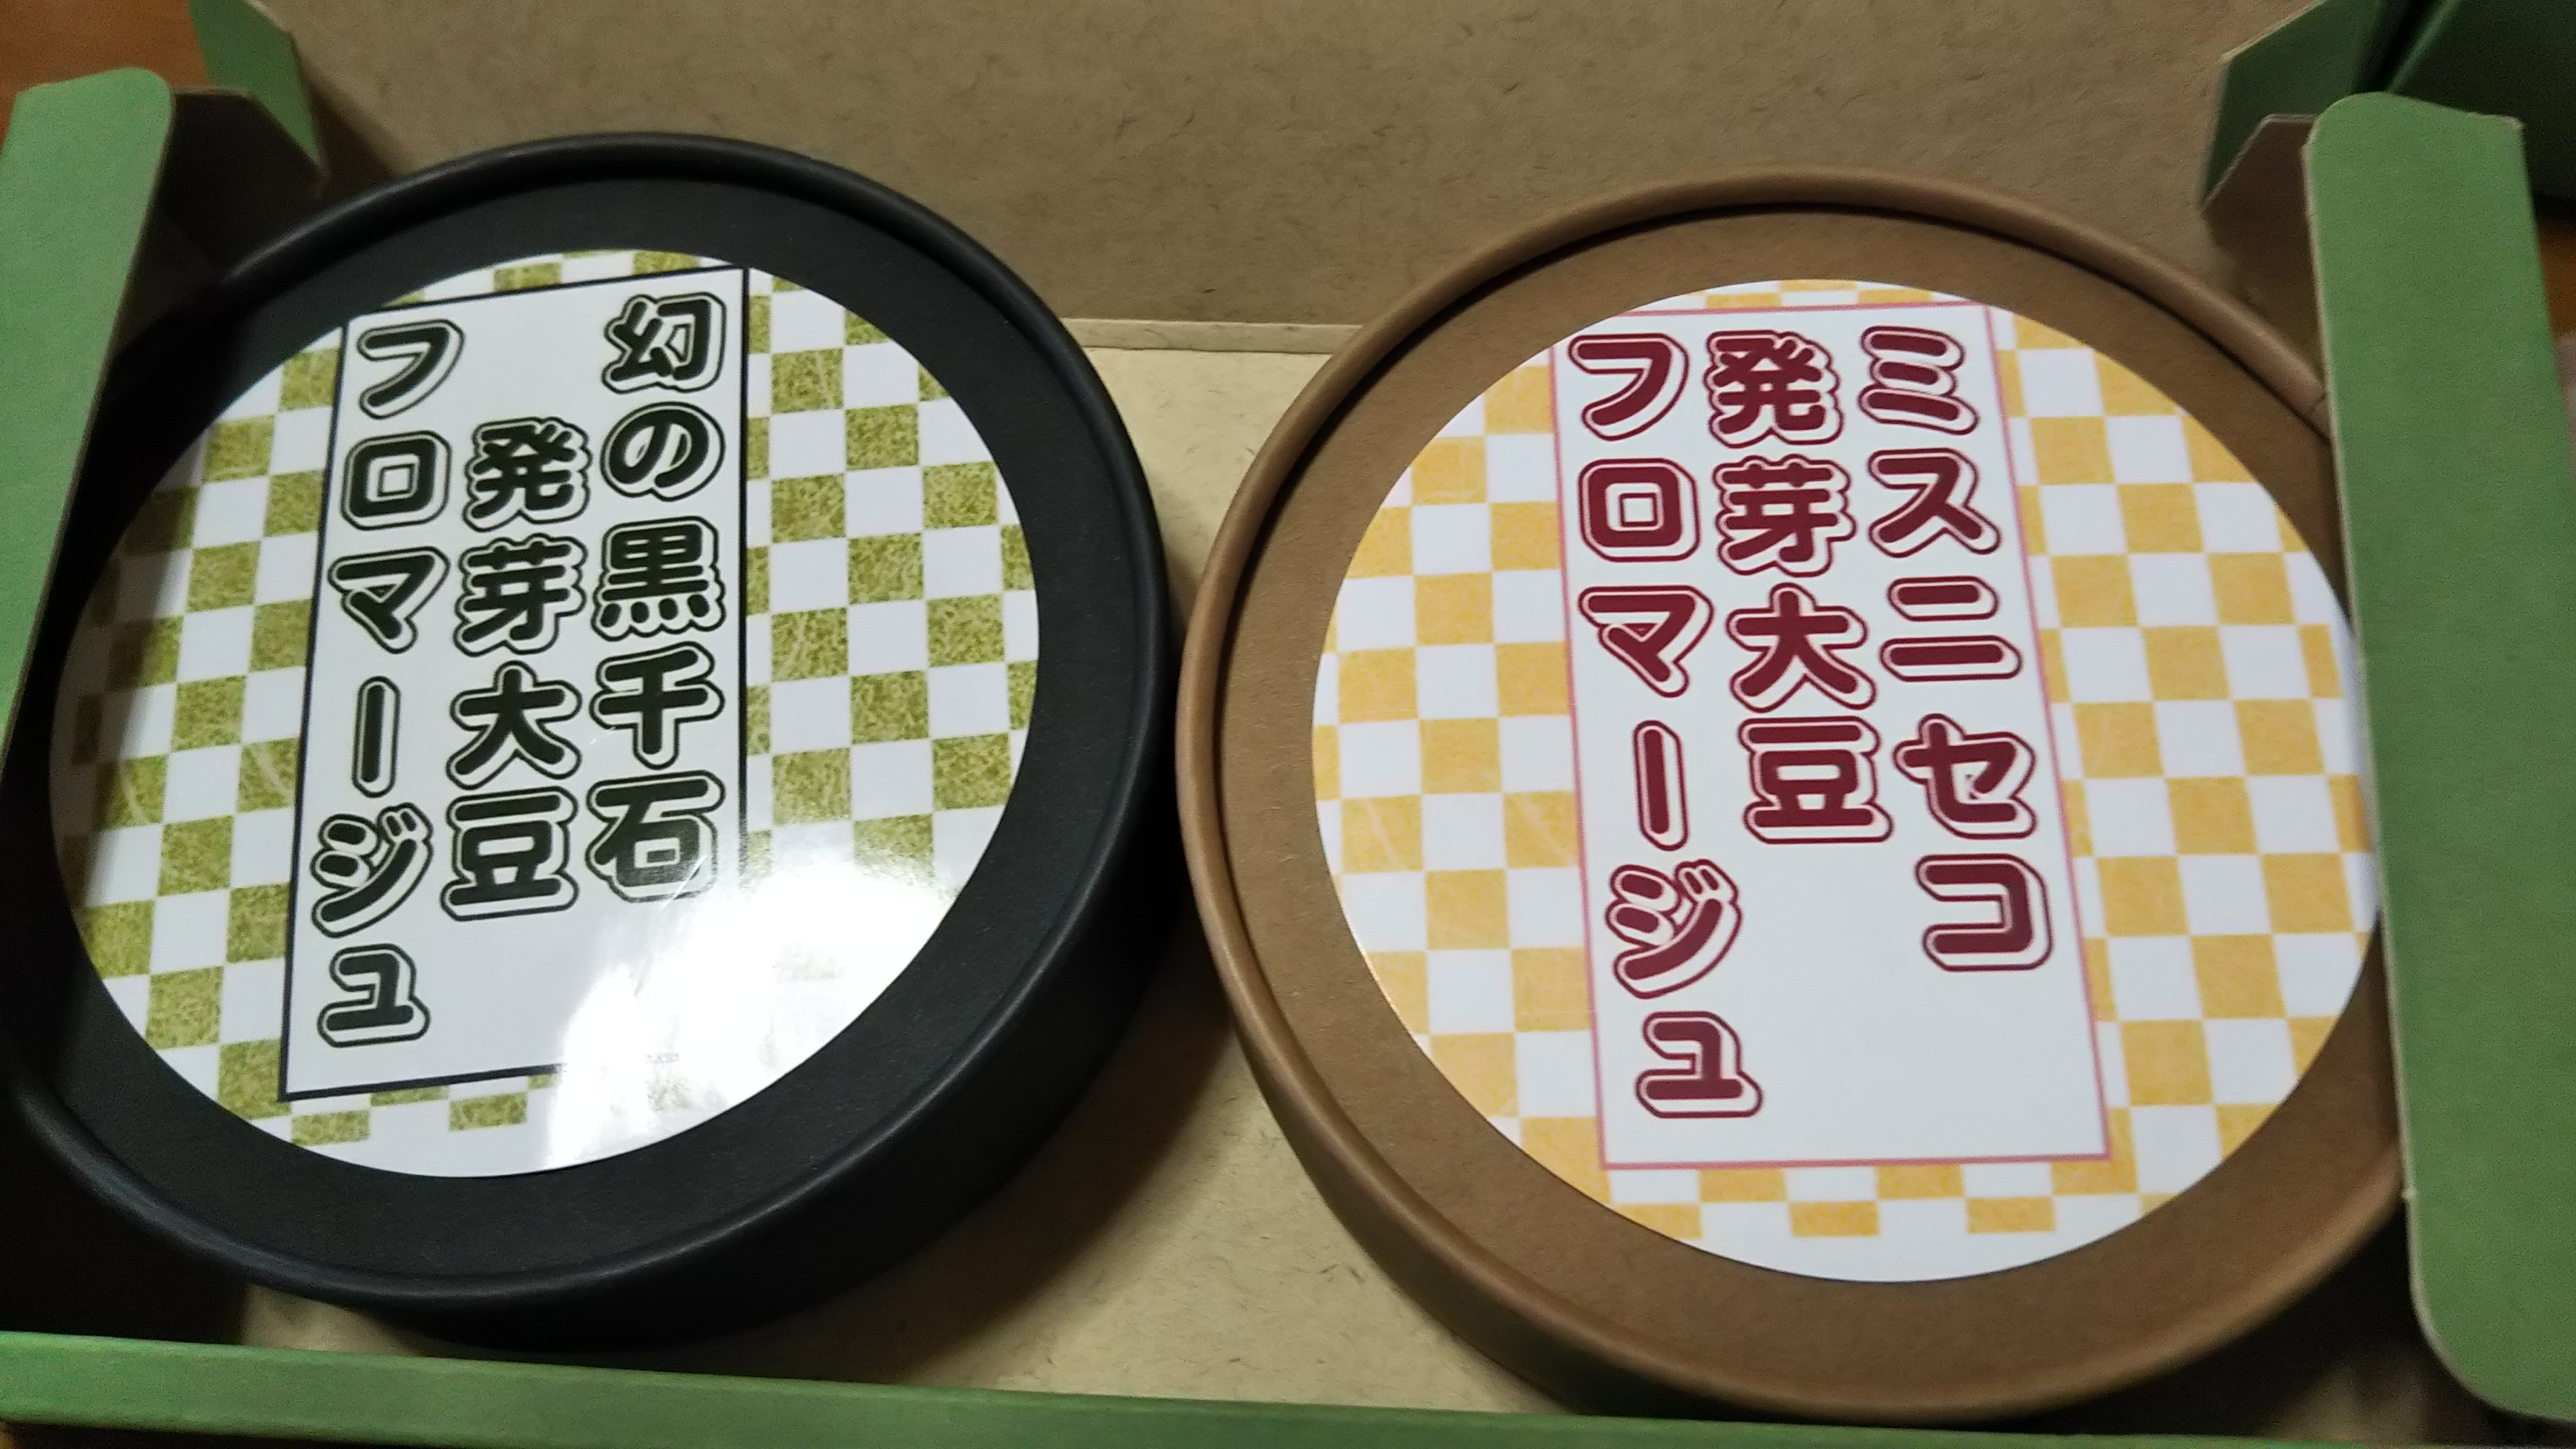 北海道ニセコ発 J-been fromage(仮称)製品化です、plant baseのラインアップが広がりました。